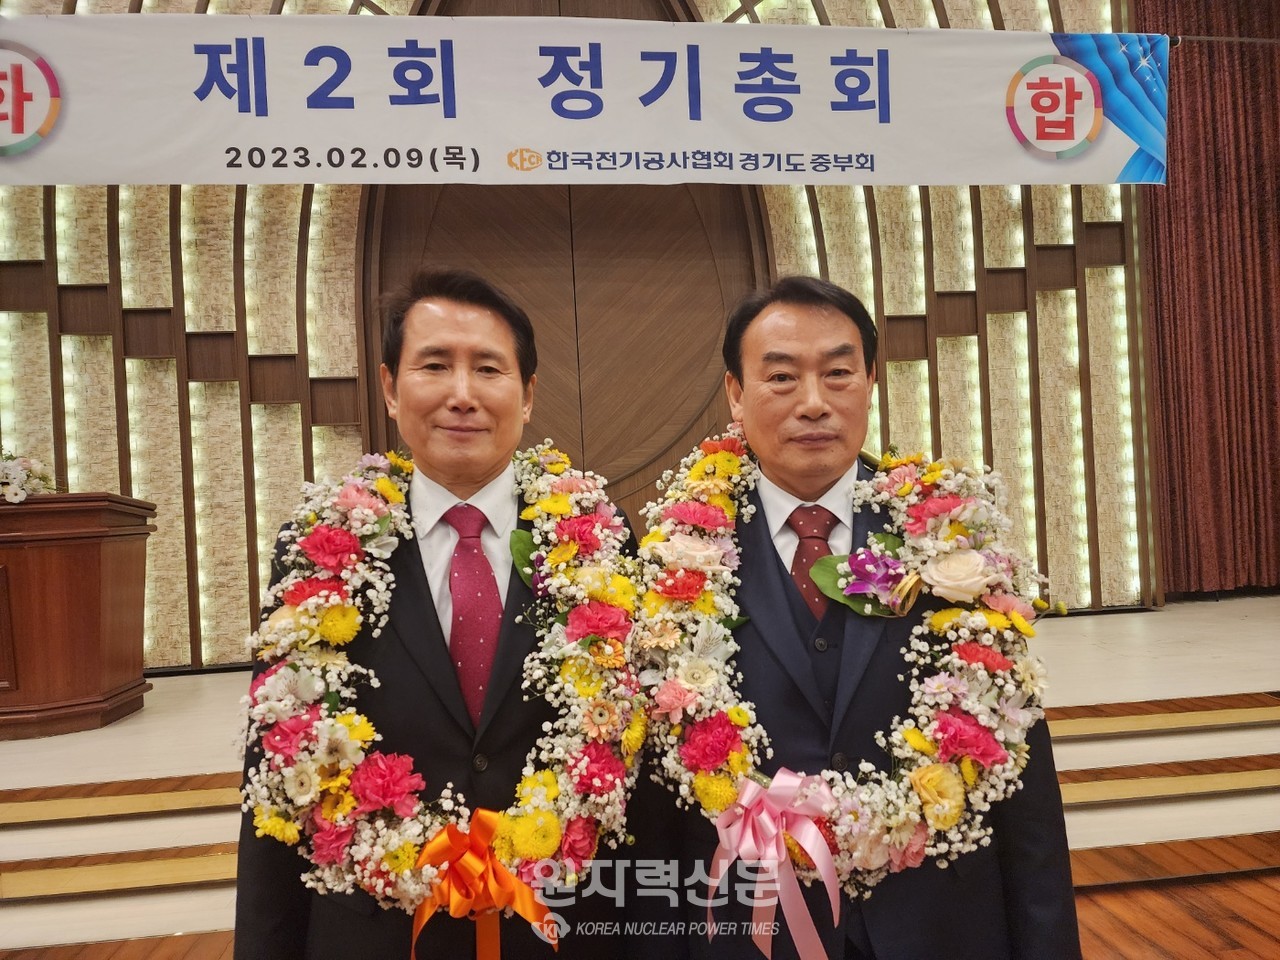 한국전기공사협회 제2대 경기도중부회장 선거에서 당선된 김길수 회장(오른쪽)과 소재식 부회장(왼쪽)   사진 = 이석우 기자